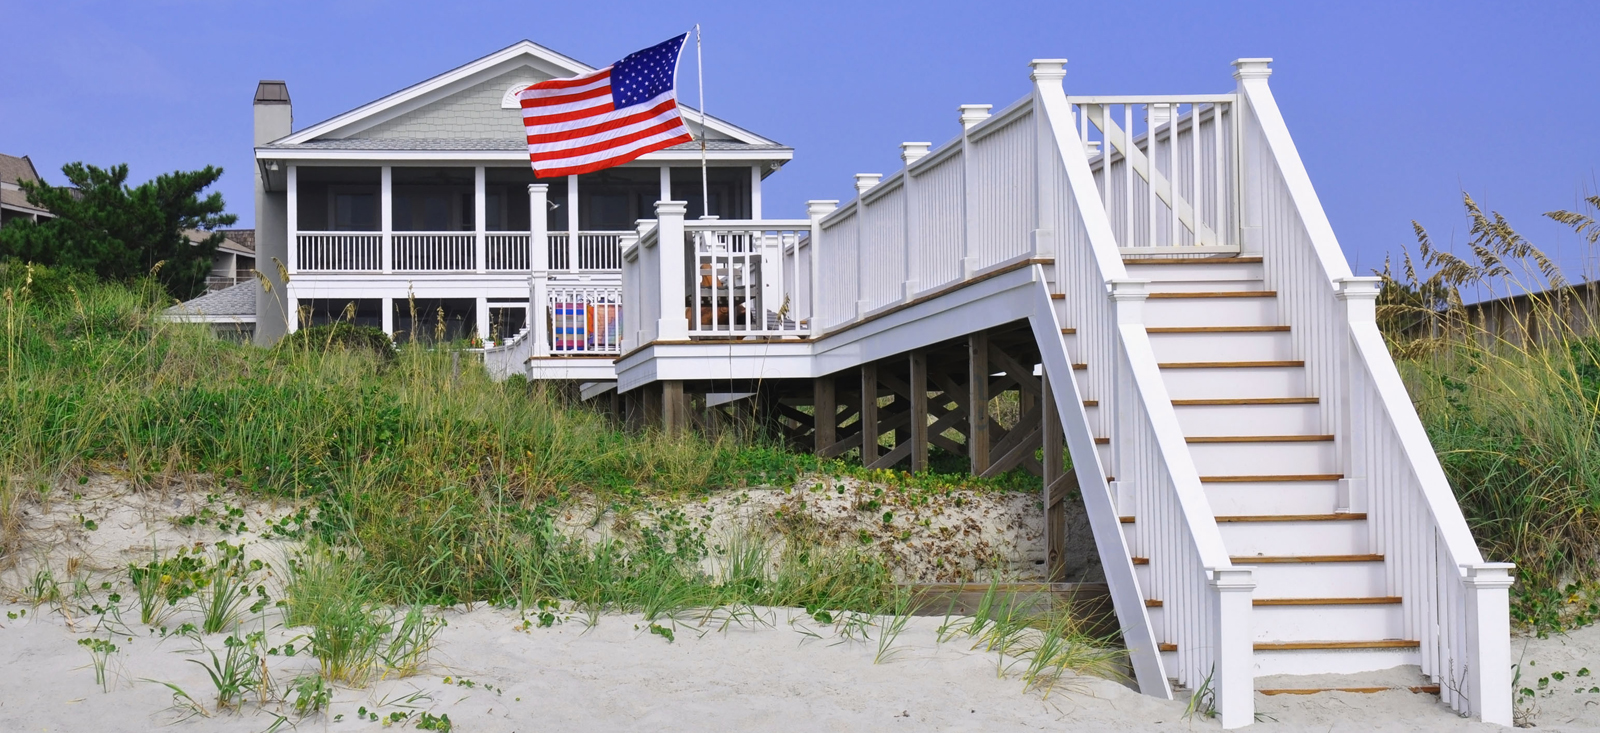 Beach-House-US-Flag